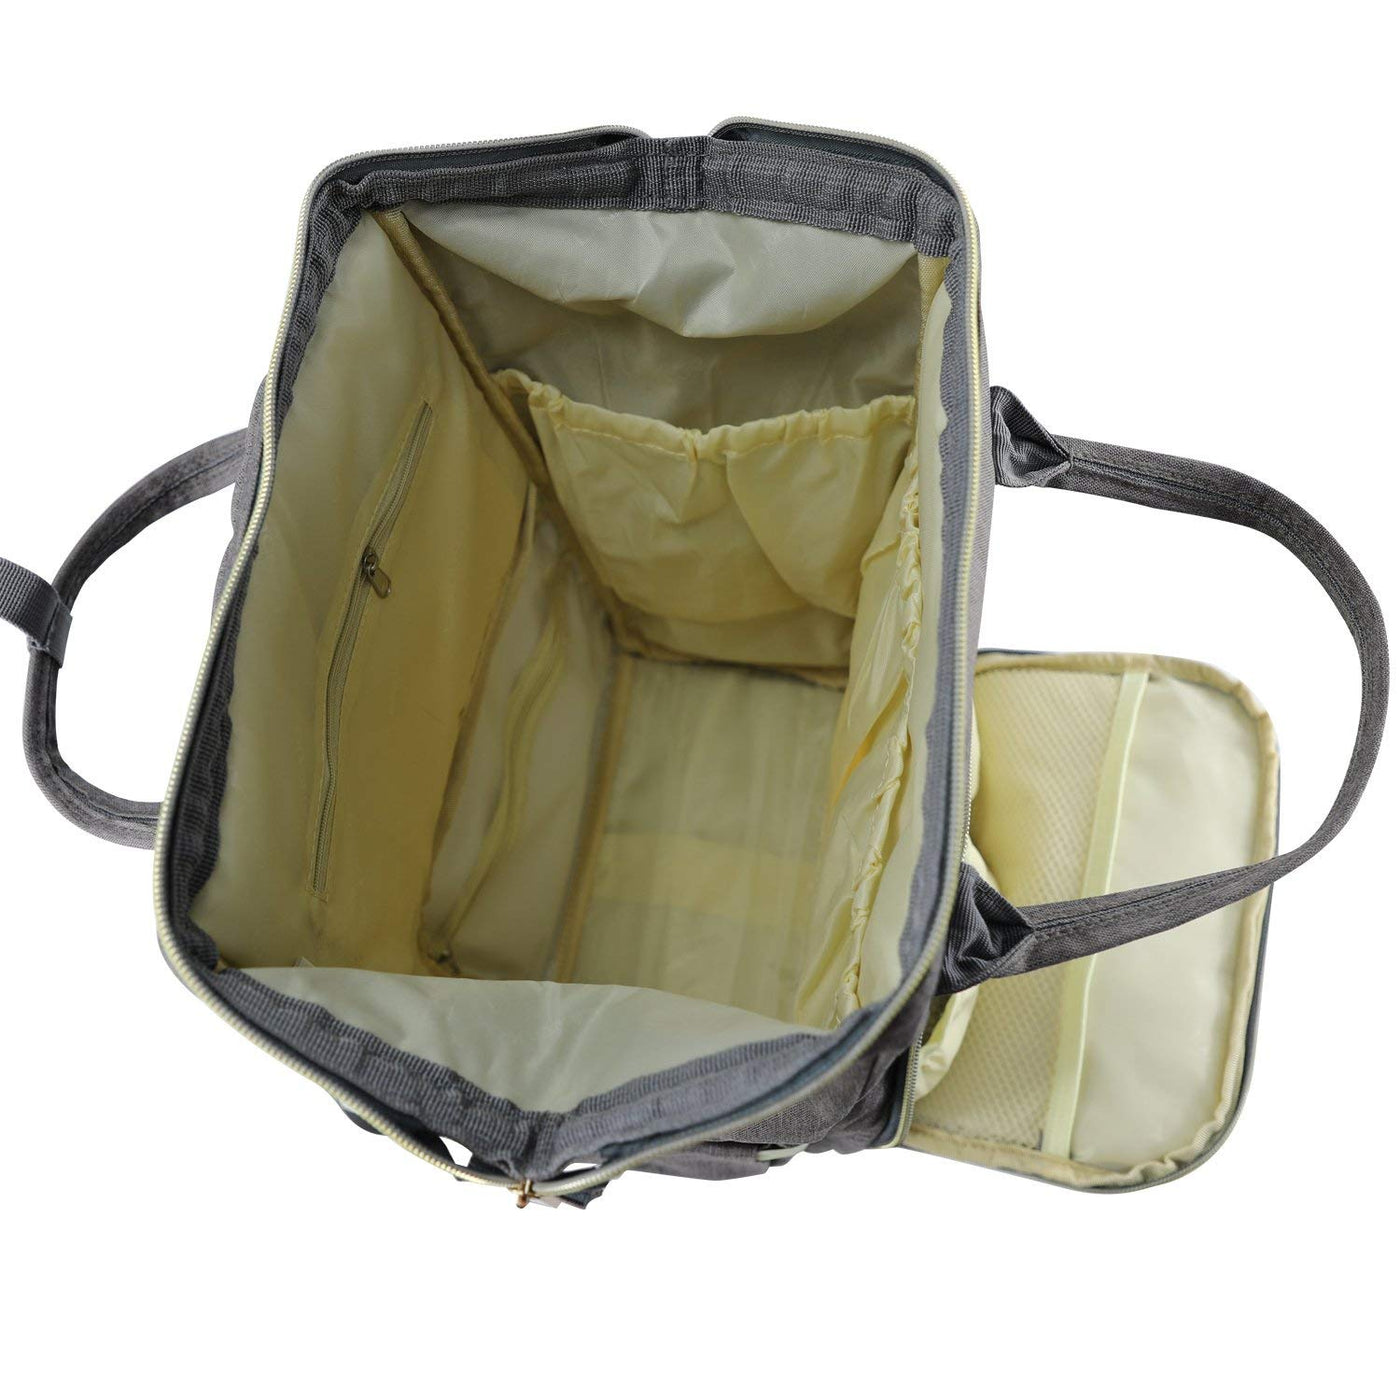 Baby Diaper Bag Maternity Backpack - Dark Grey